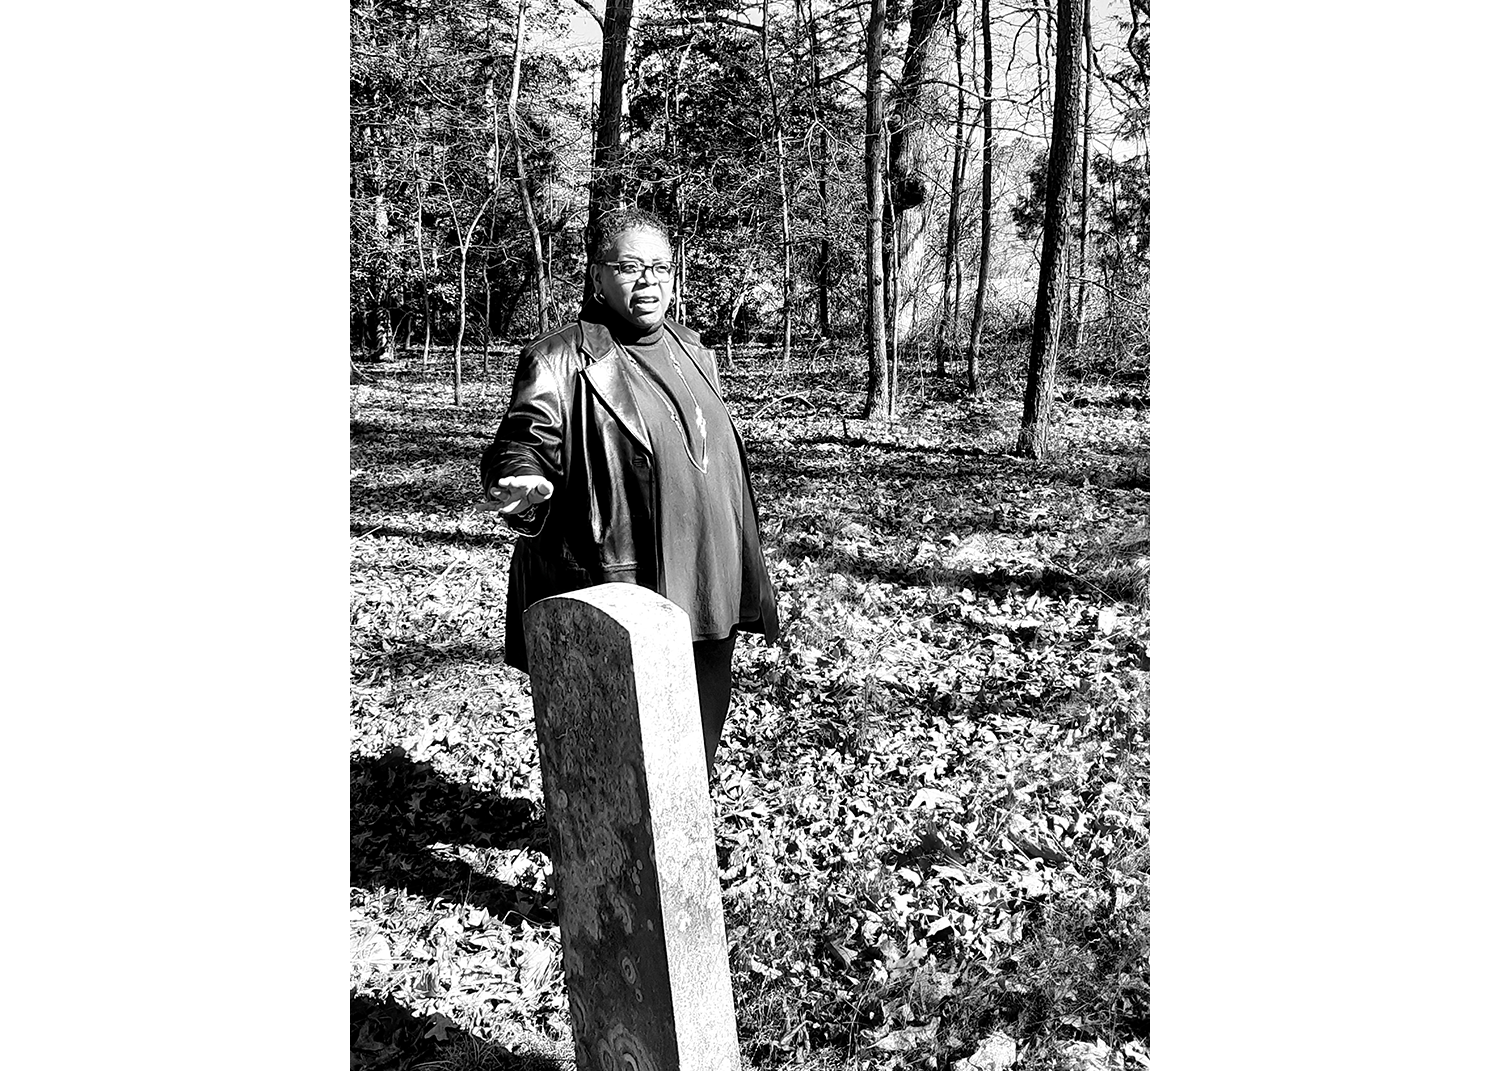 بالأسود والأبيض ، تقف امرأة سوداء تشير إلى شاهد قبر أمامها ، في مقبرة حولها العشب والأشجار.